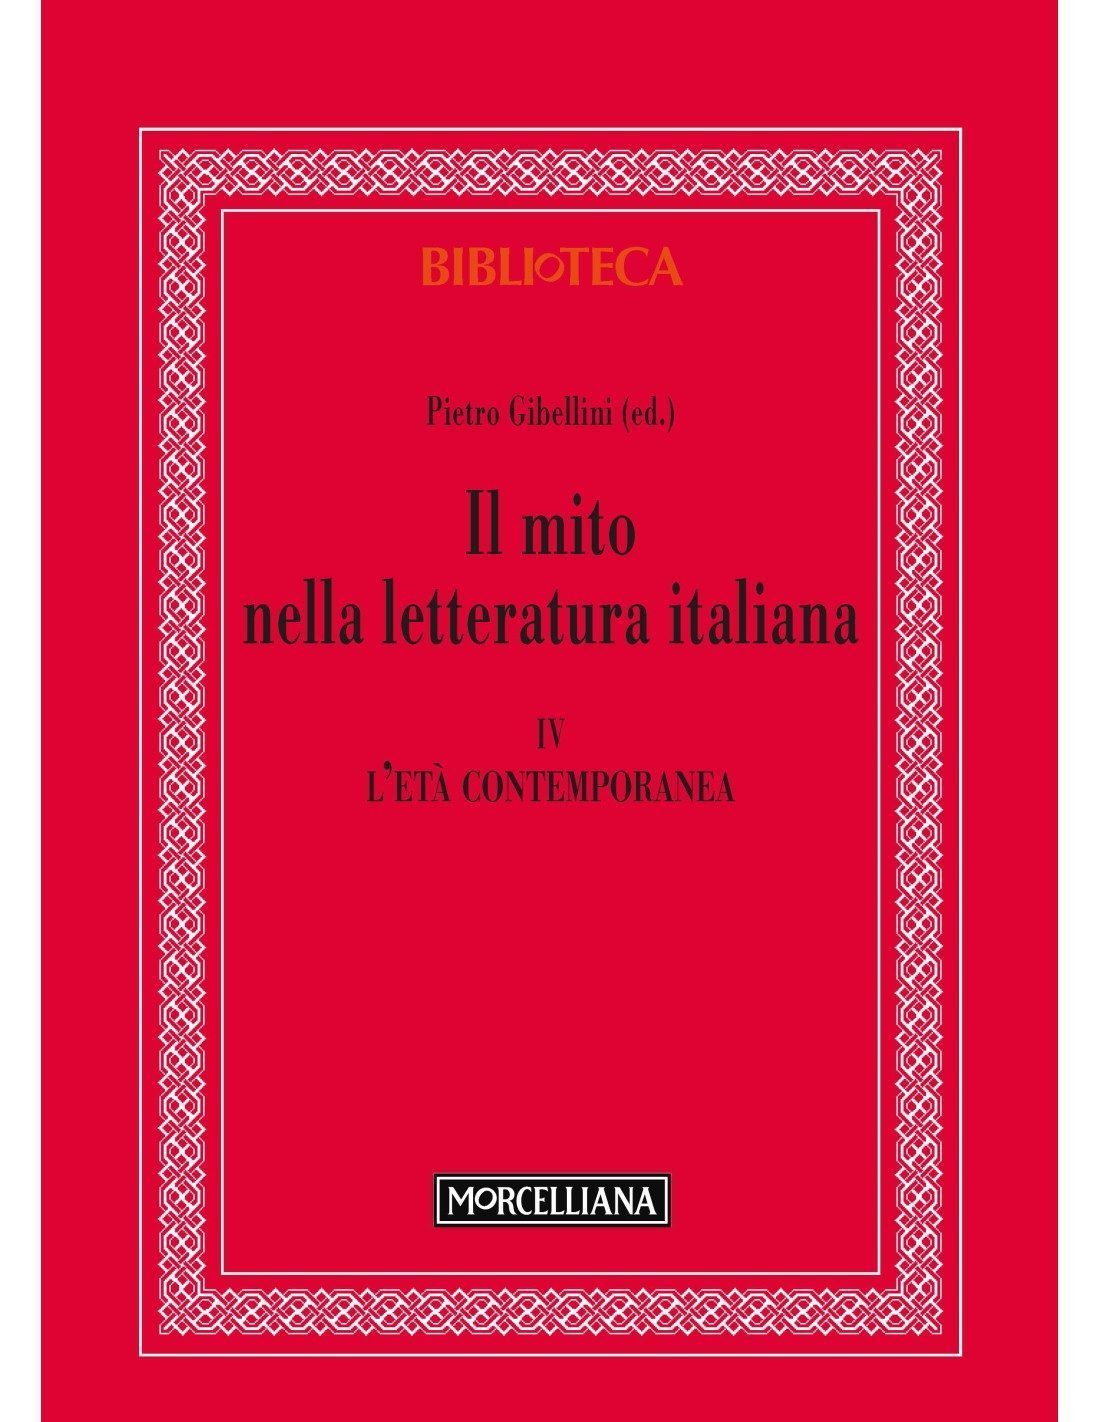 Il mito nella letteratura italiana, Vol. IV, Biblioteca